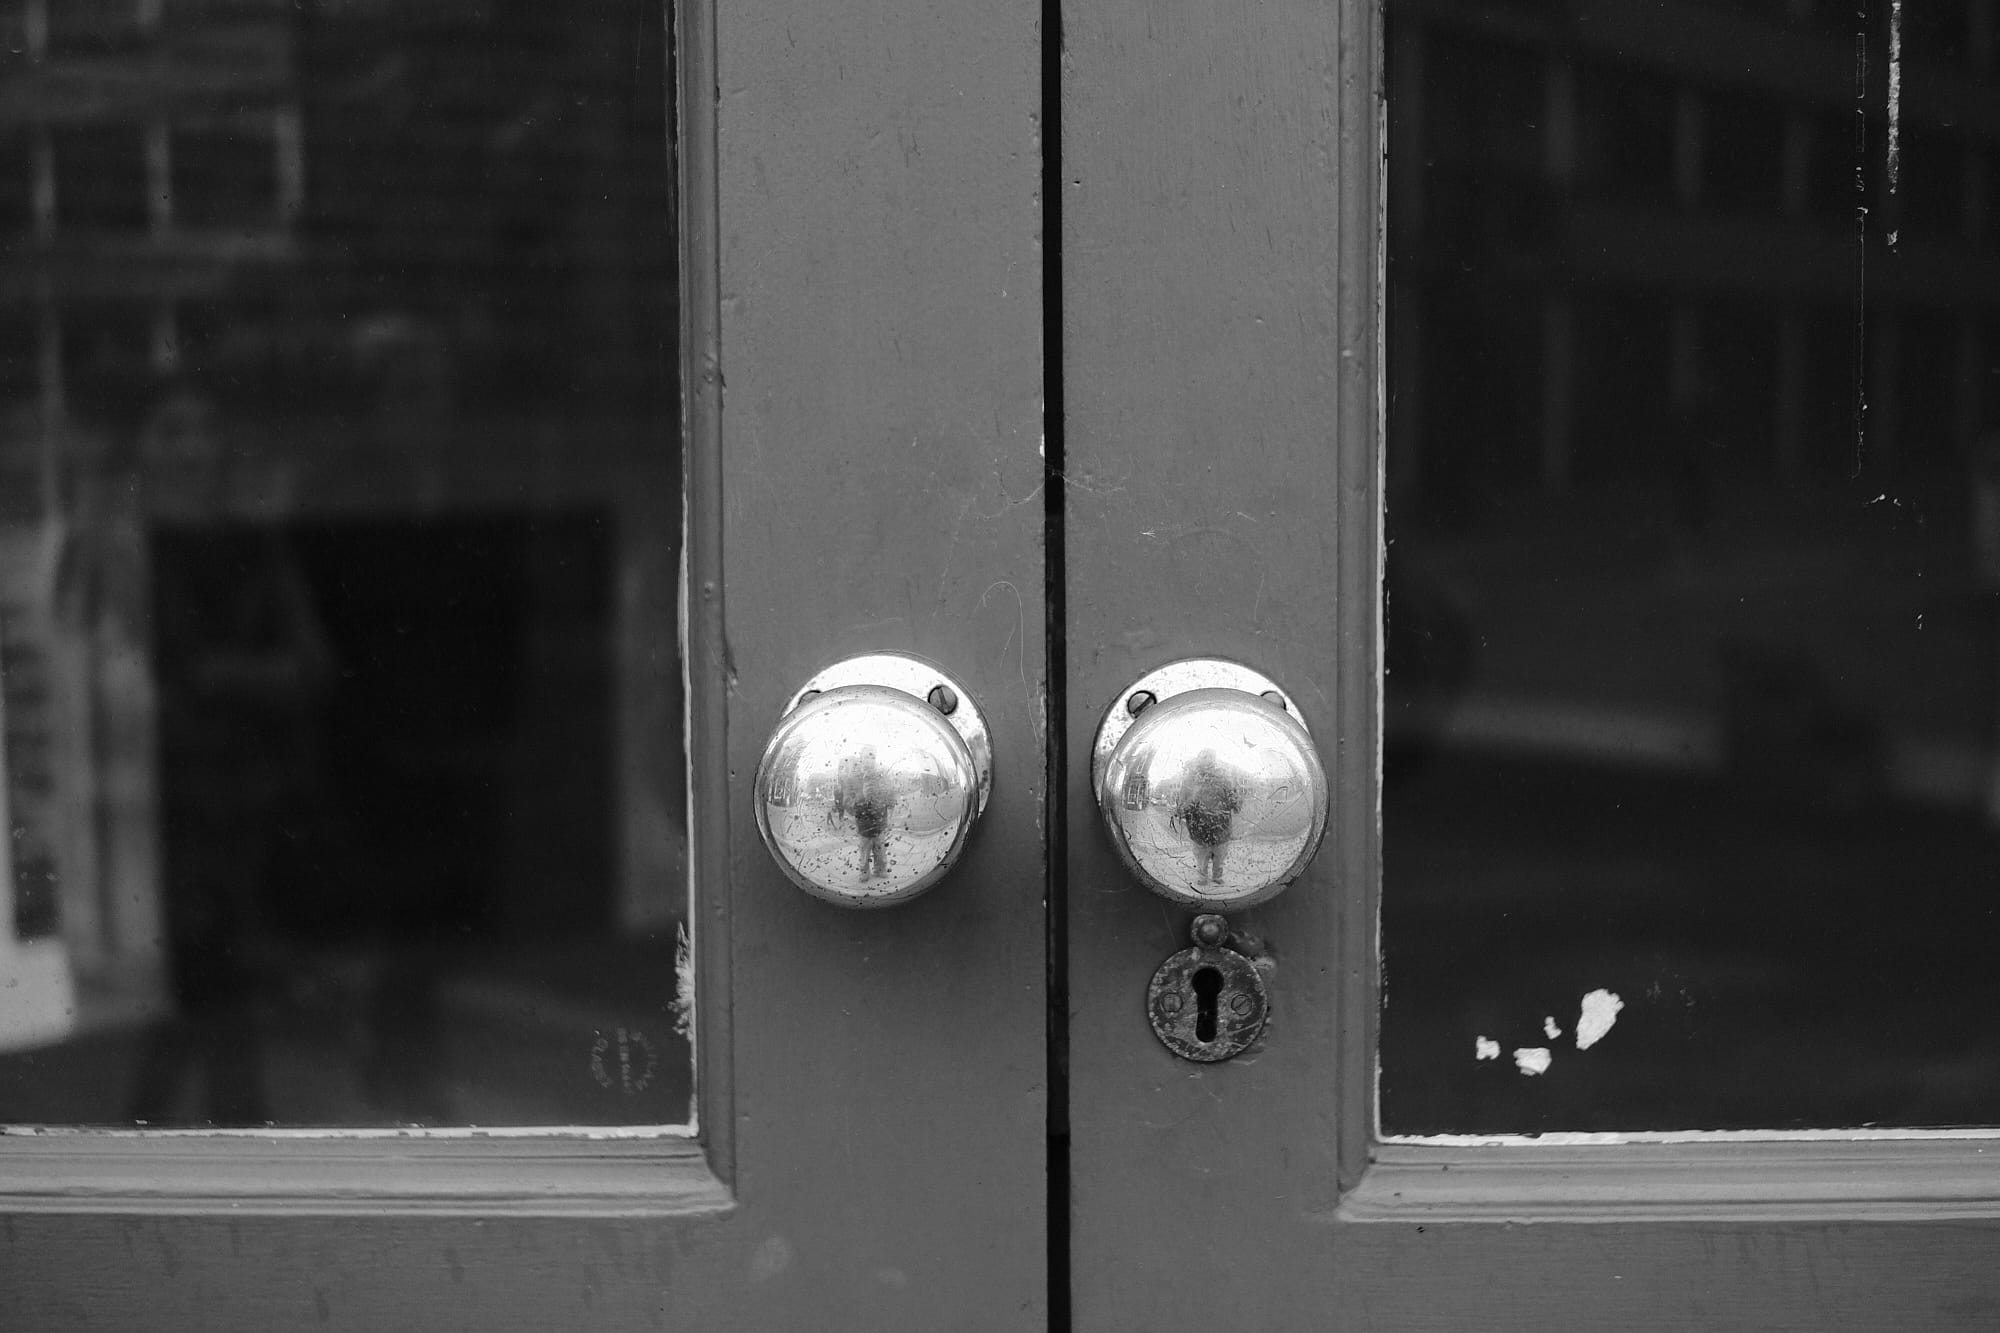 shiny exterior doorknobs